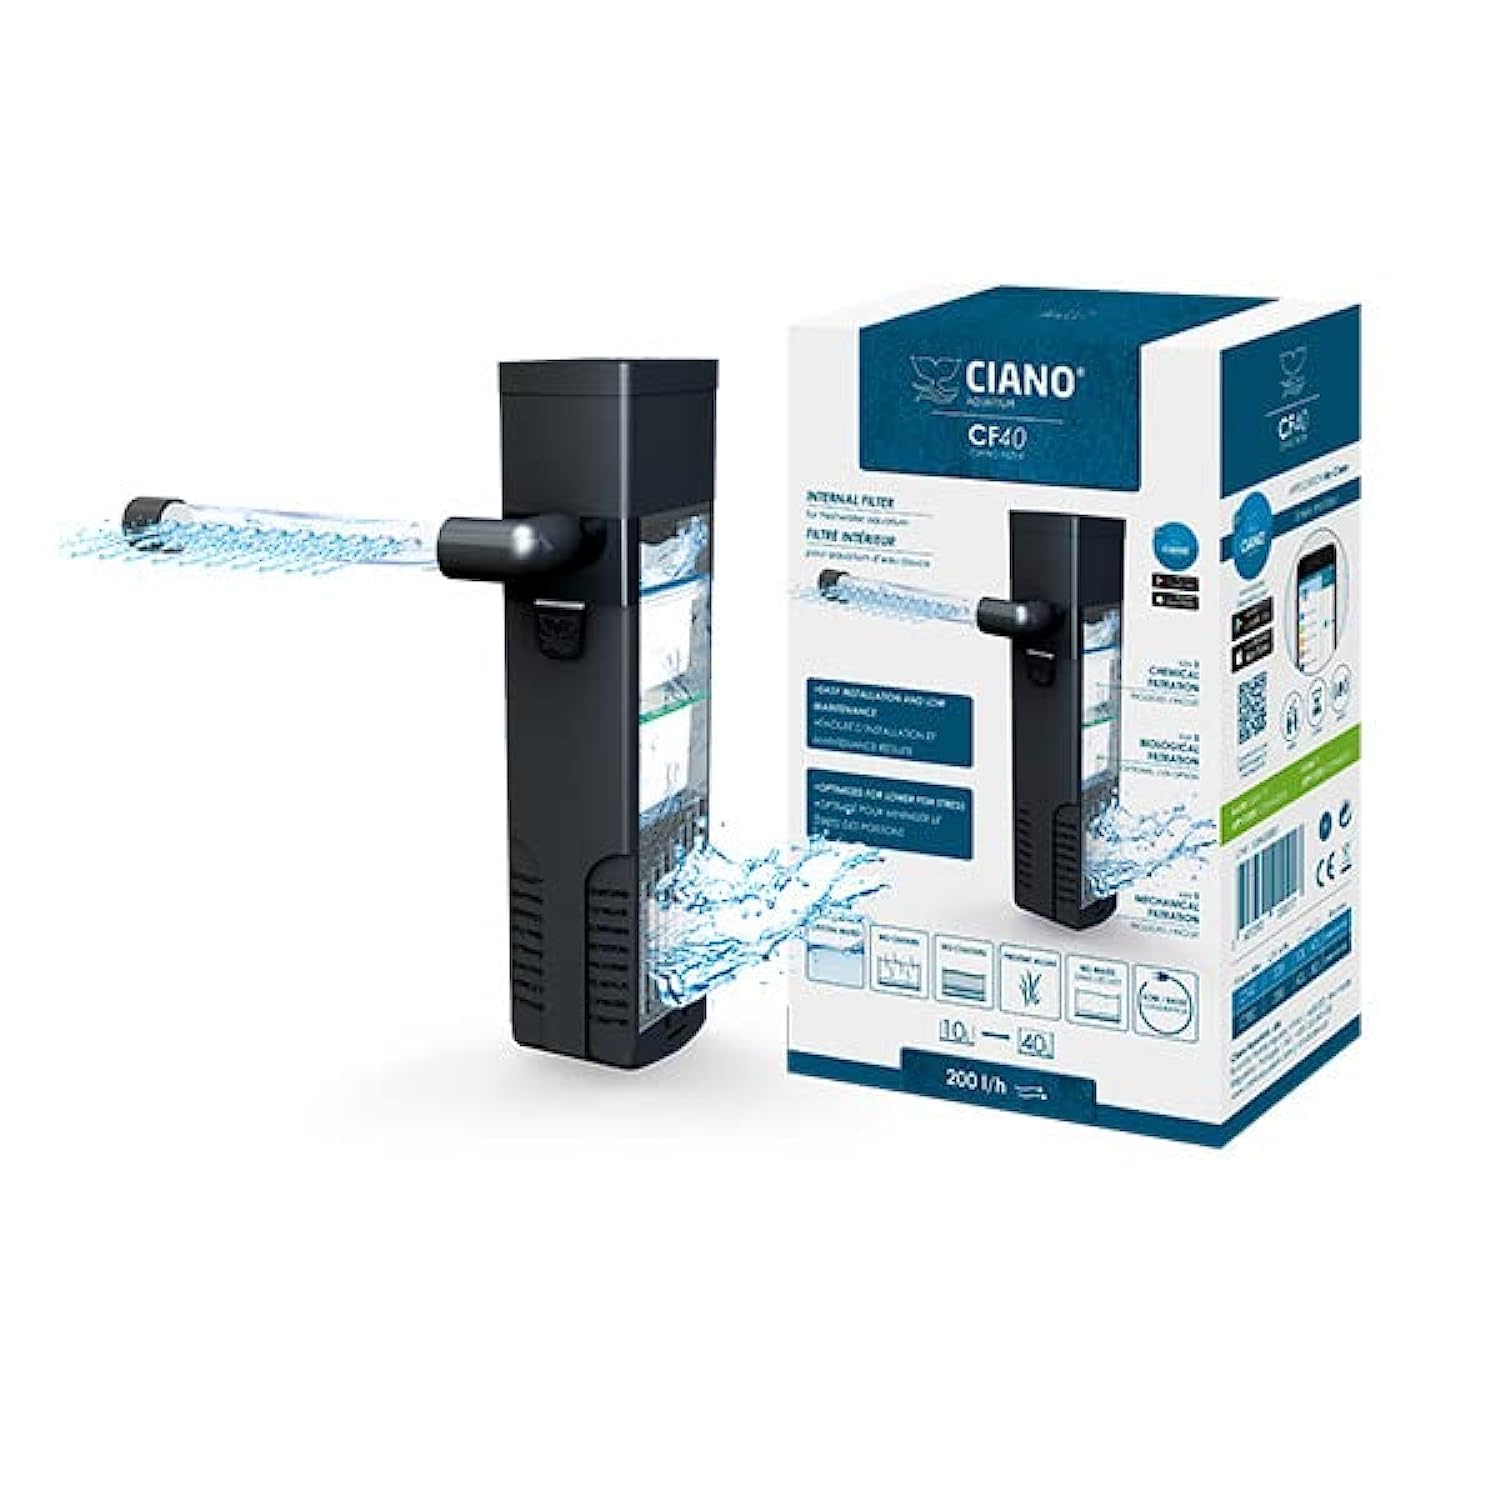 Ciano CF40 Innenfilter für Aquarien – Durchfluss von 200 l/h. Geeignet für Aquarien zwischen 10–40 l.